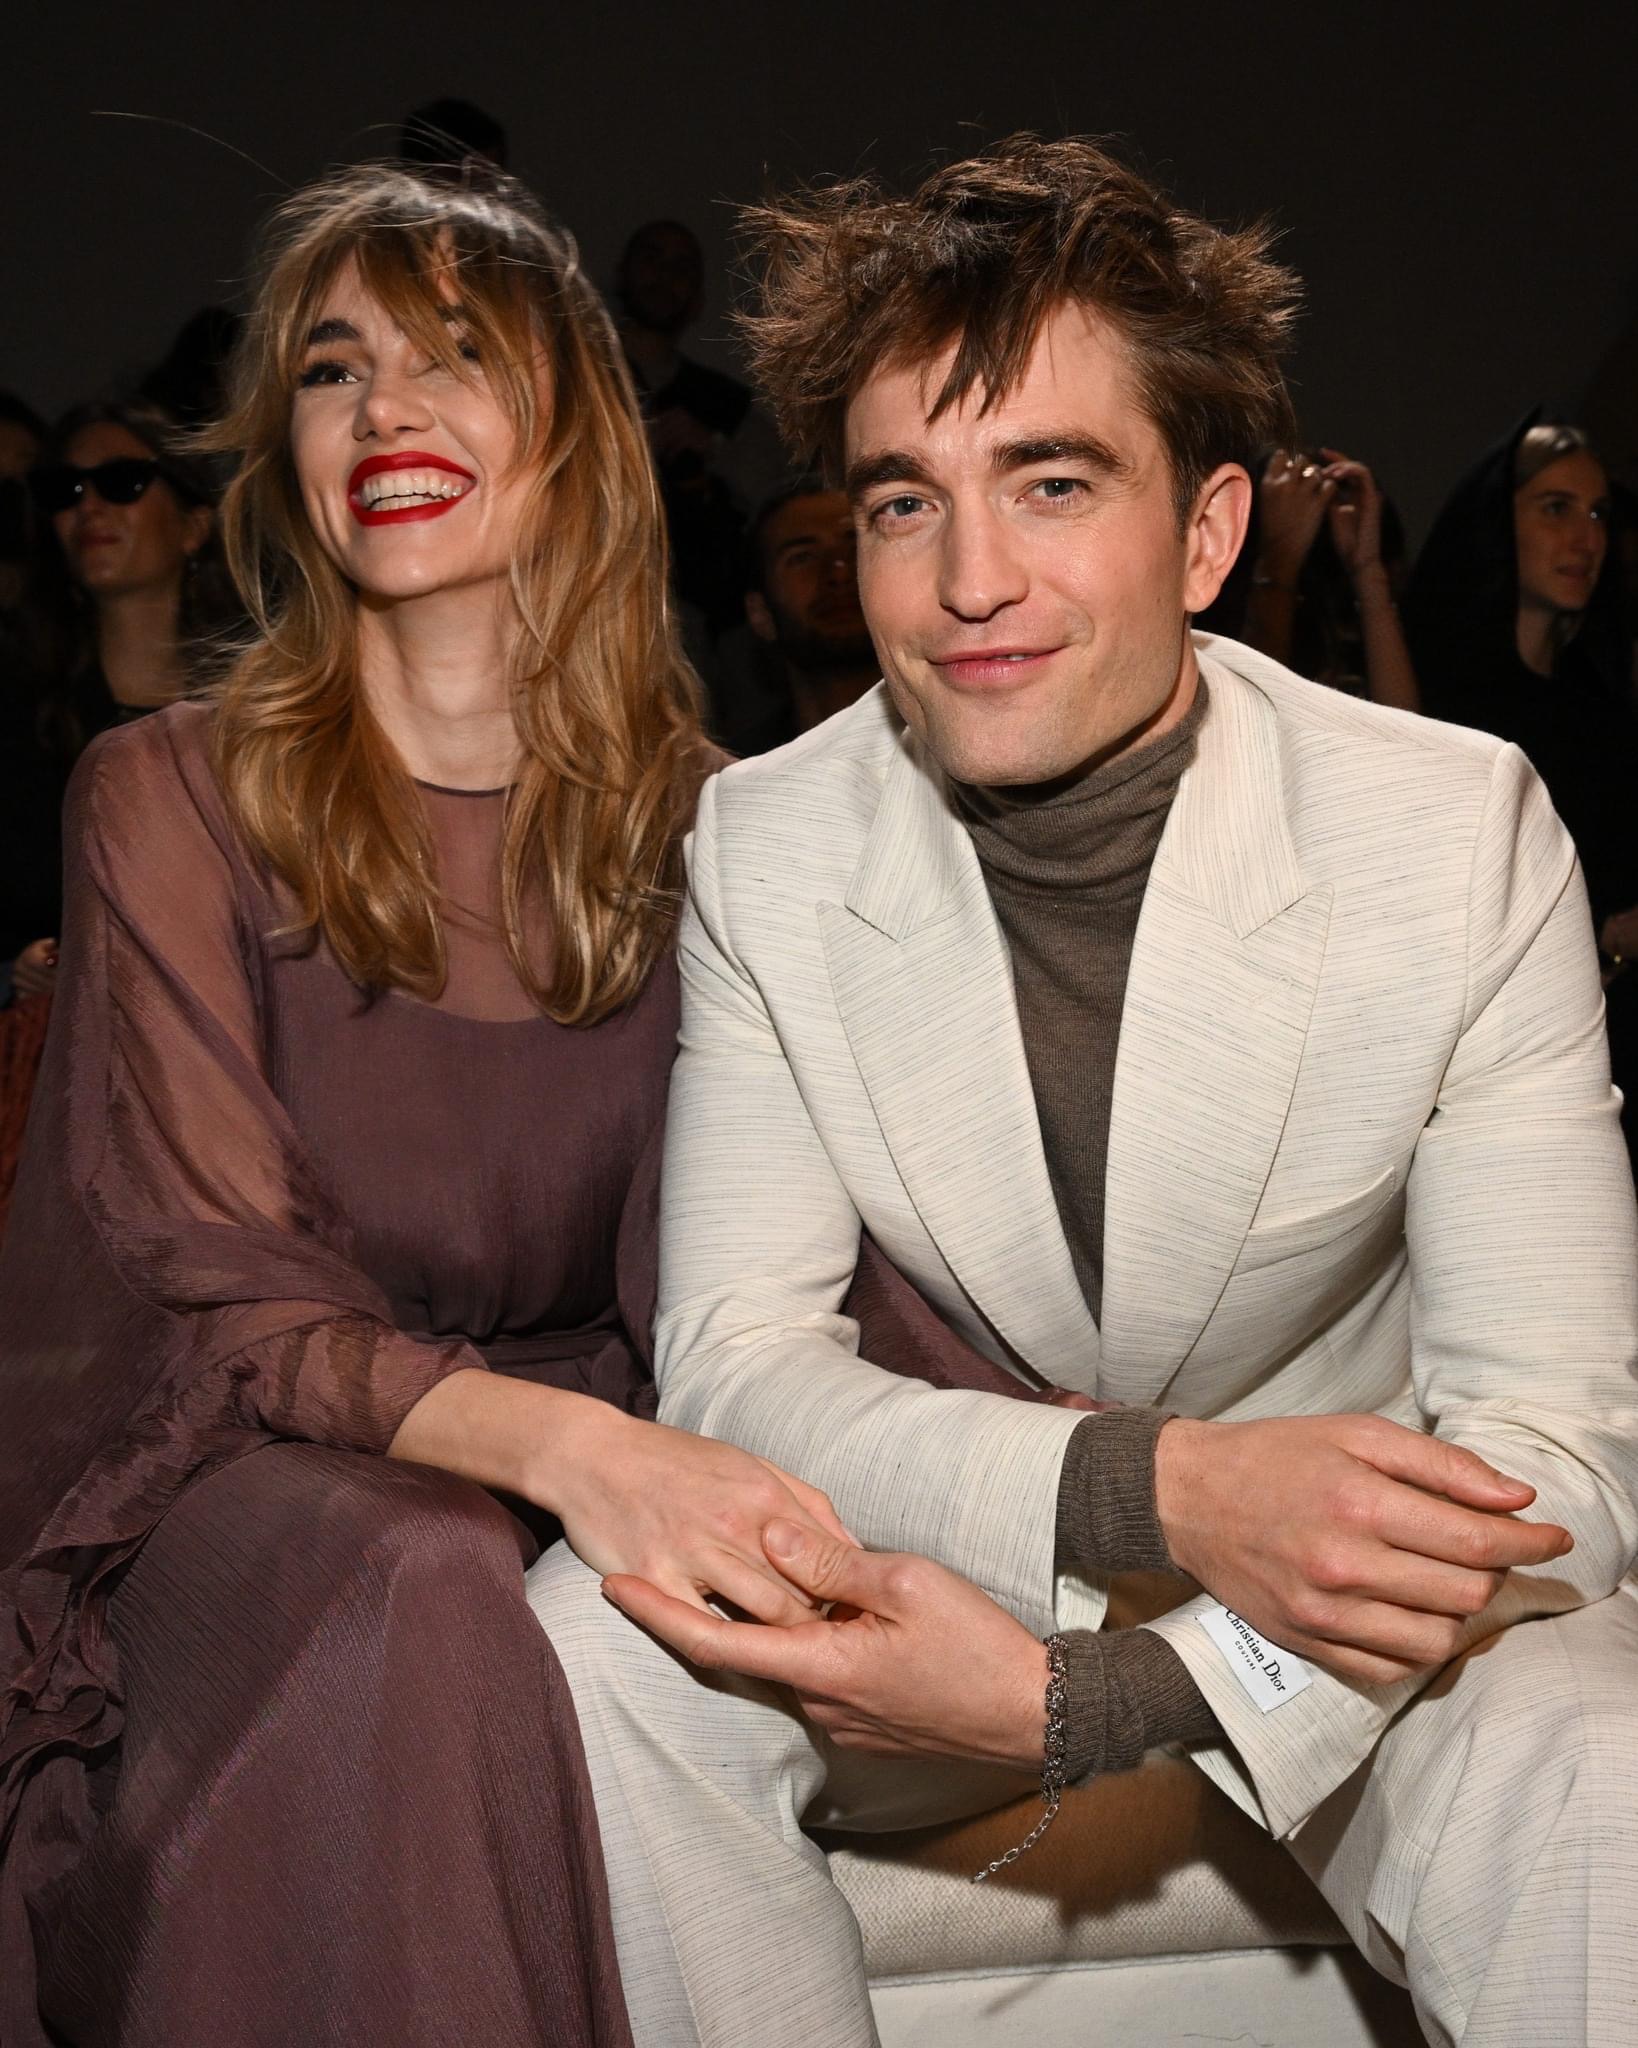 Ma cà rồng Robert Pattinson và bạn gái người mẫu lần đầu công khai lộ diện sau 4 năm yêu, visual cả đôi gây xôn xao - Ảnh 4.